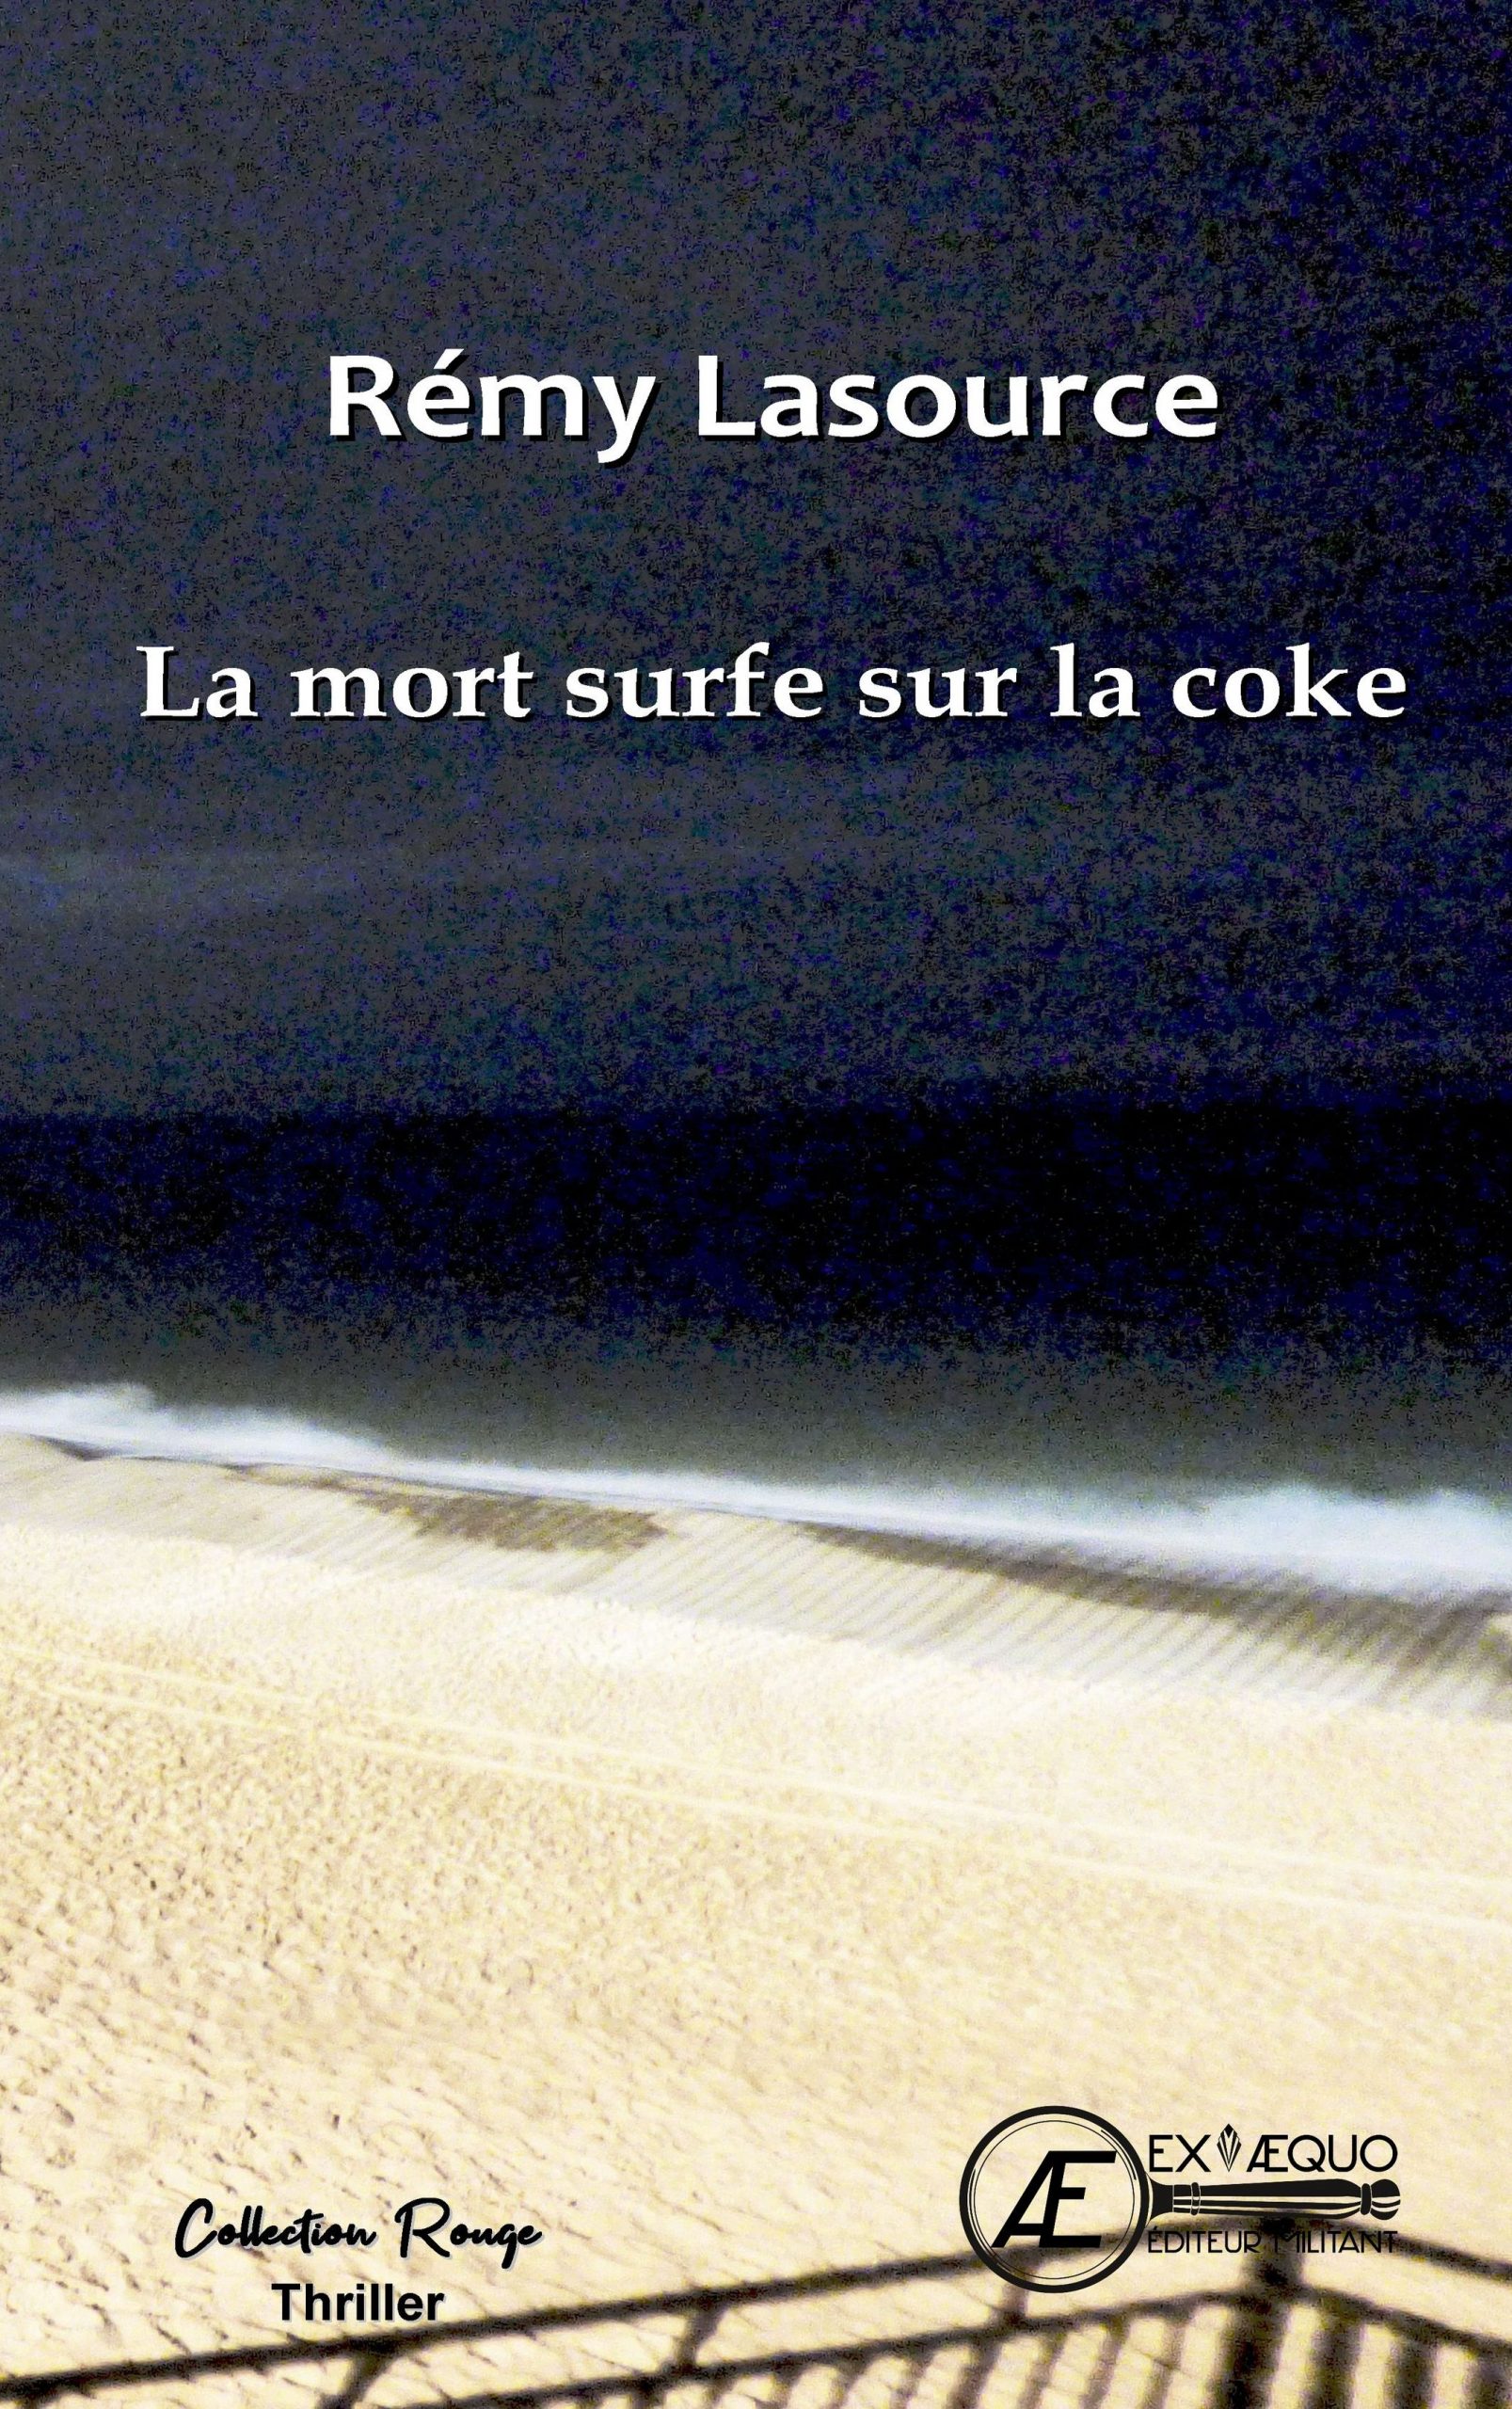 You are currently viewing La mort surfe sur la coke, de Rémy Lasource